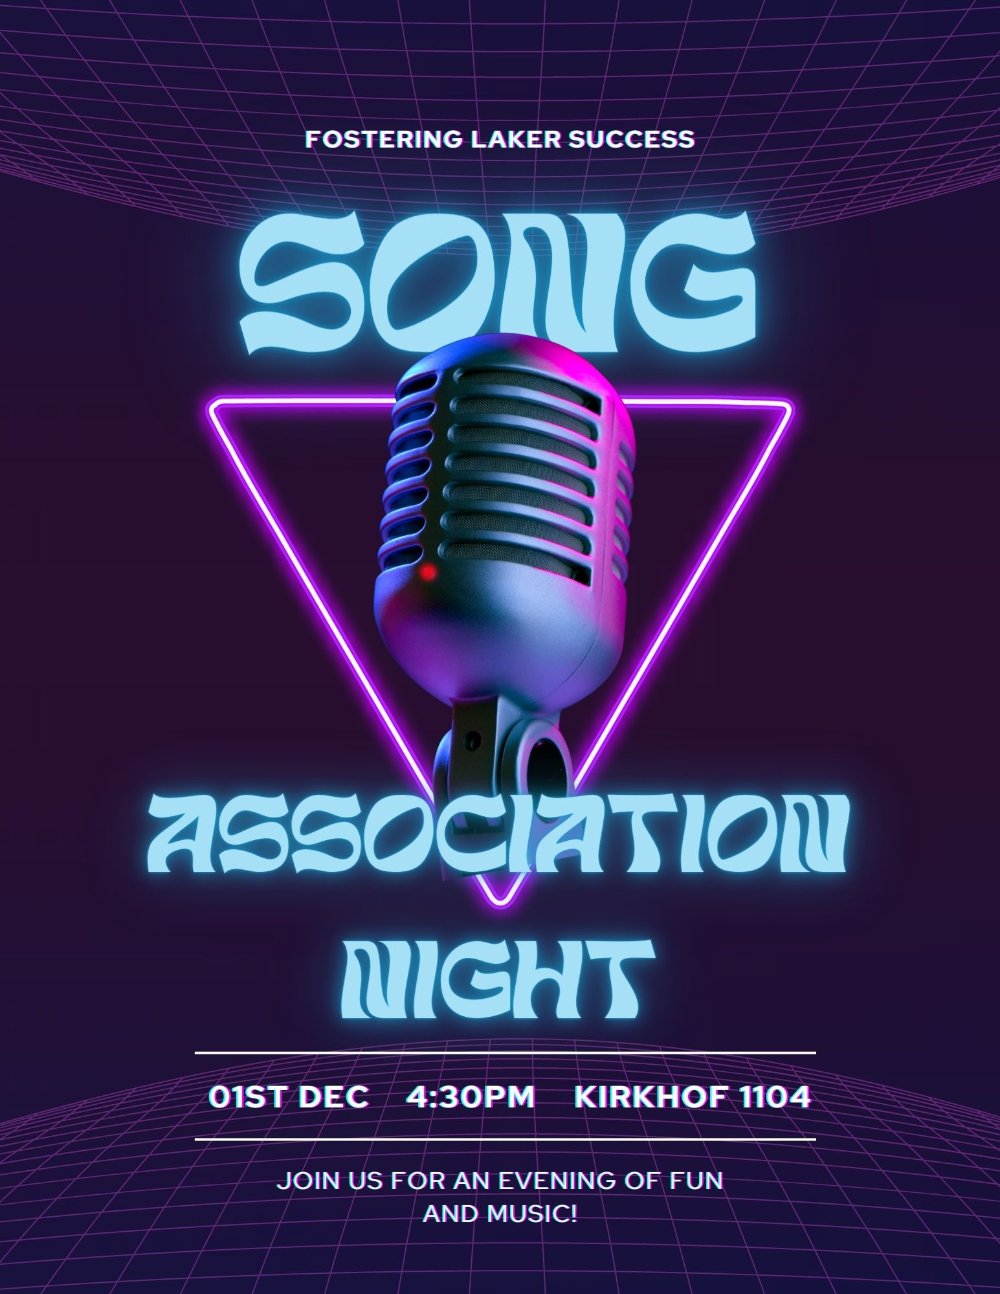 FLS Song Association Night